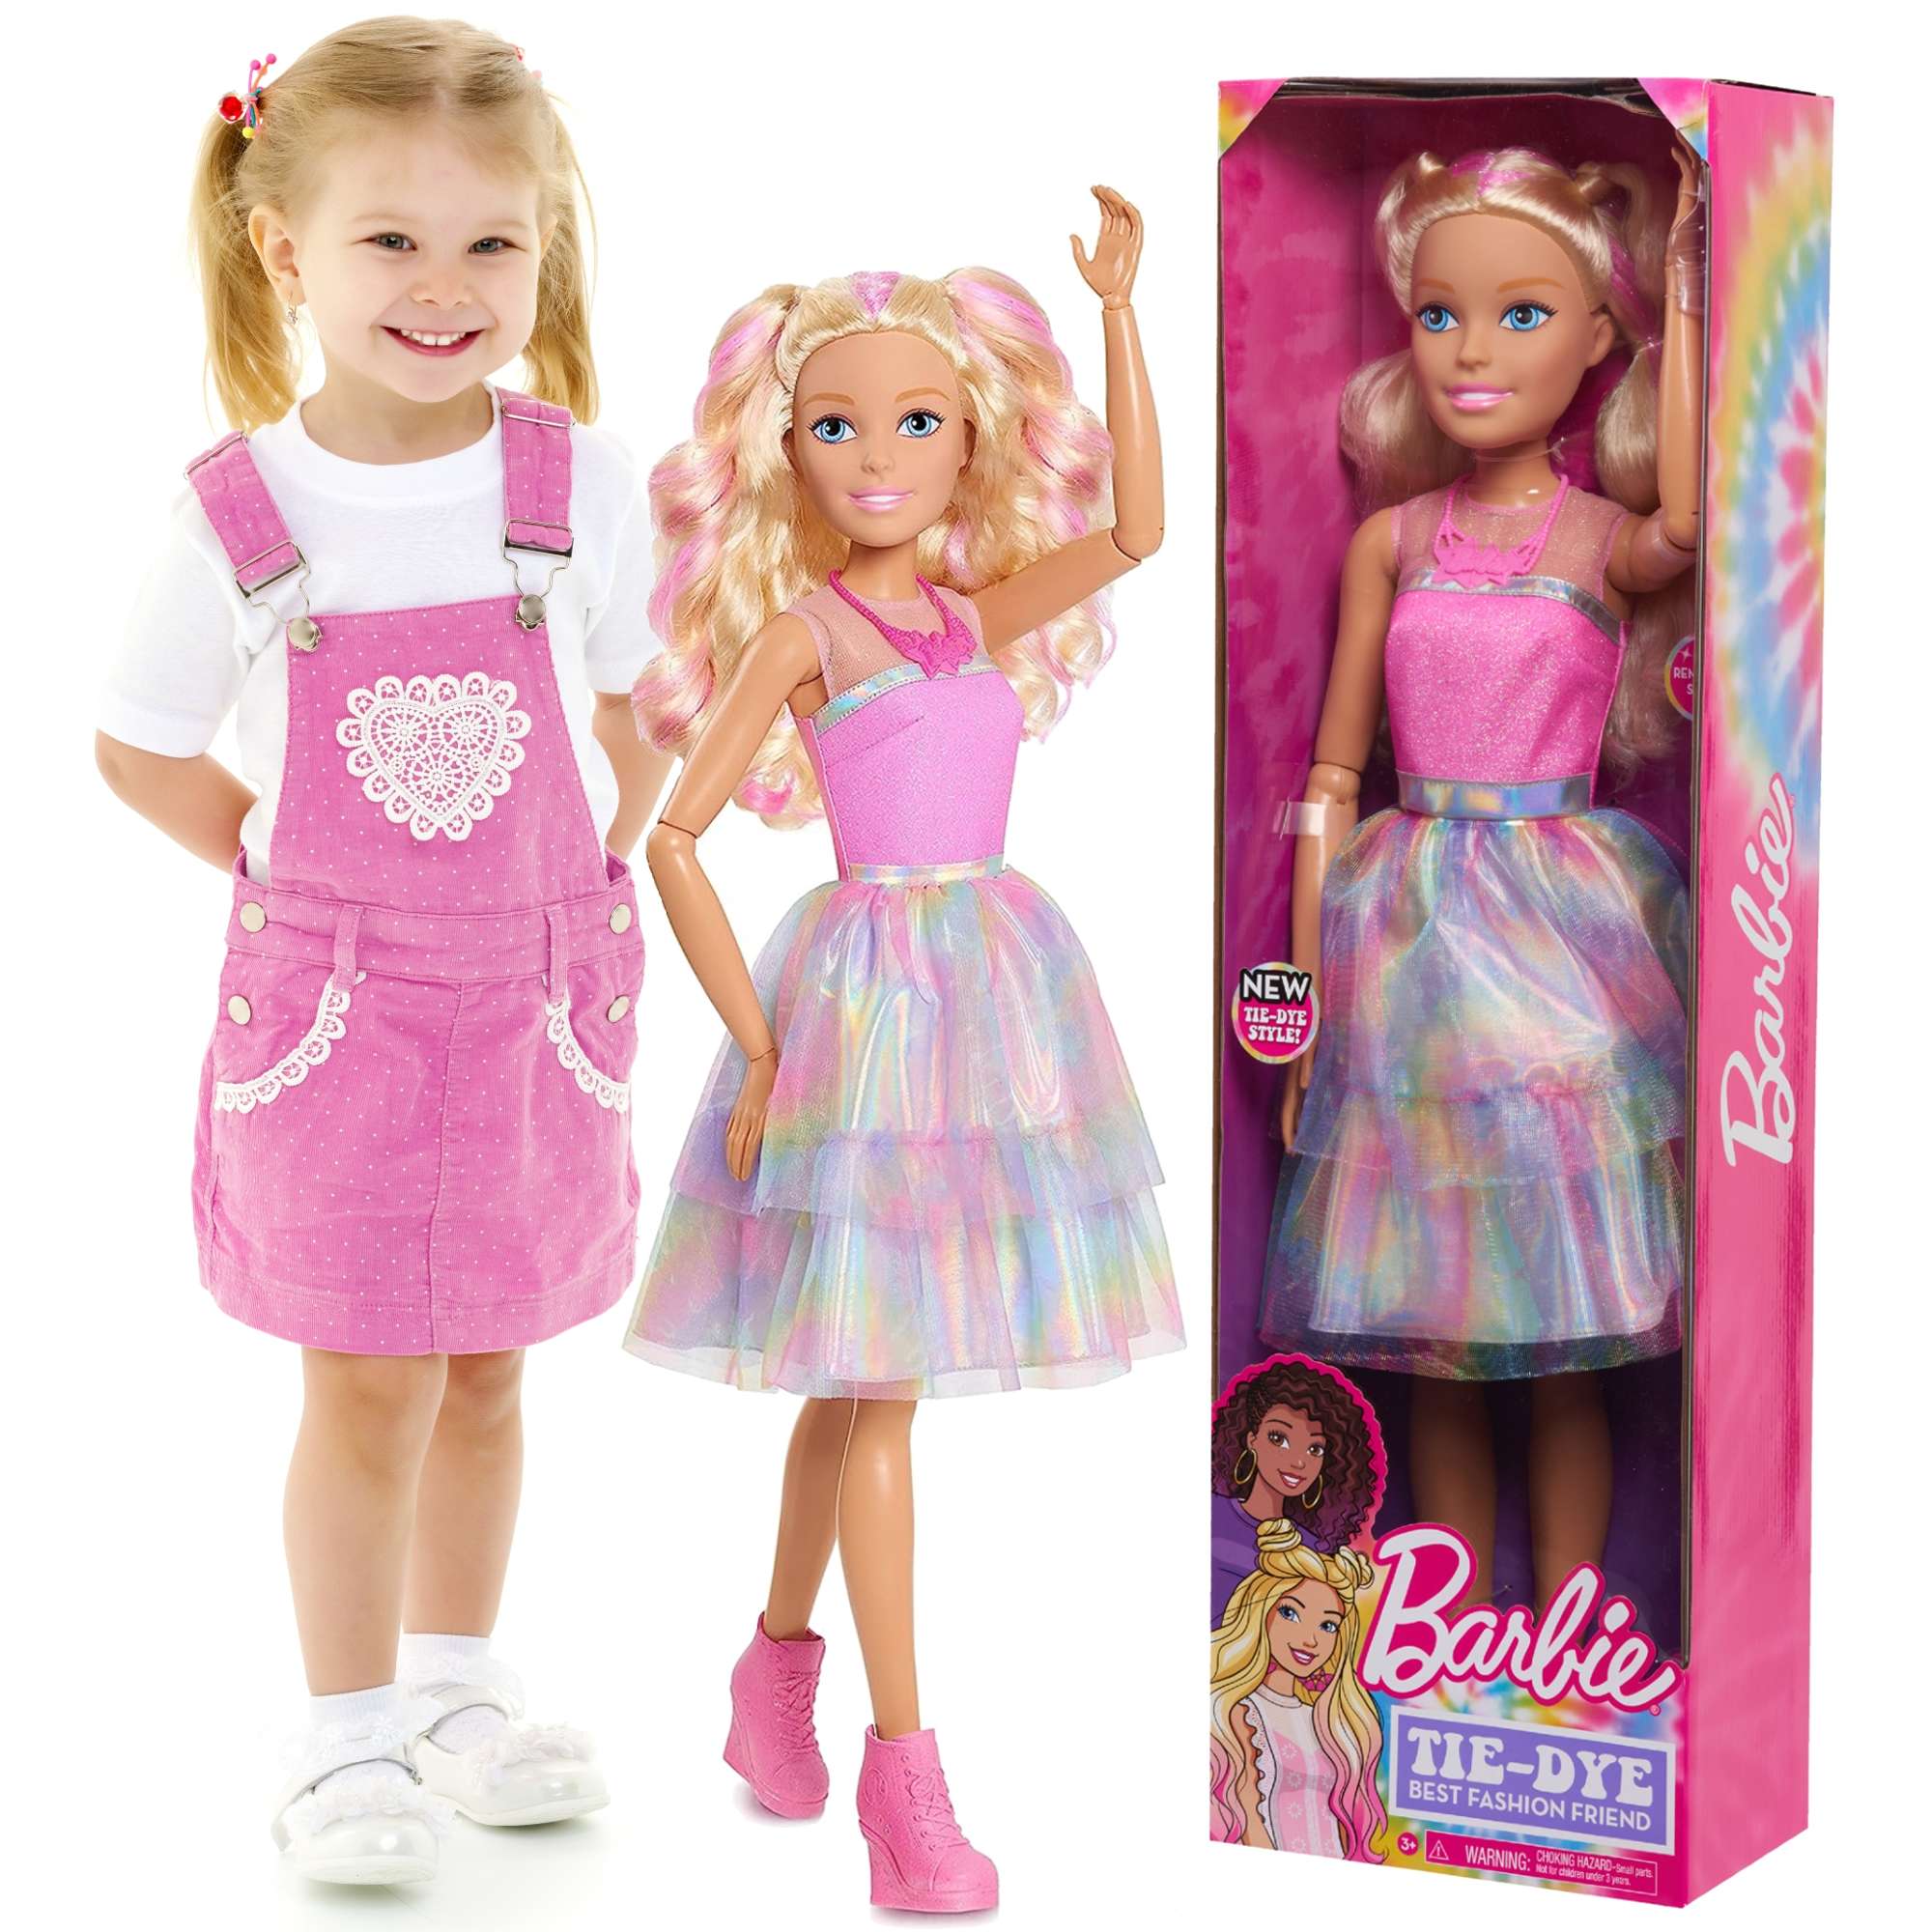 Du¿a lalka Barbie blondynka w modnej kolorowej kreacji 70 cm tie-dye ruchome rêce i g³owa